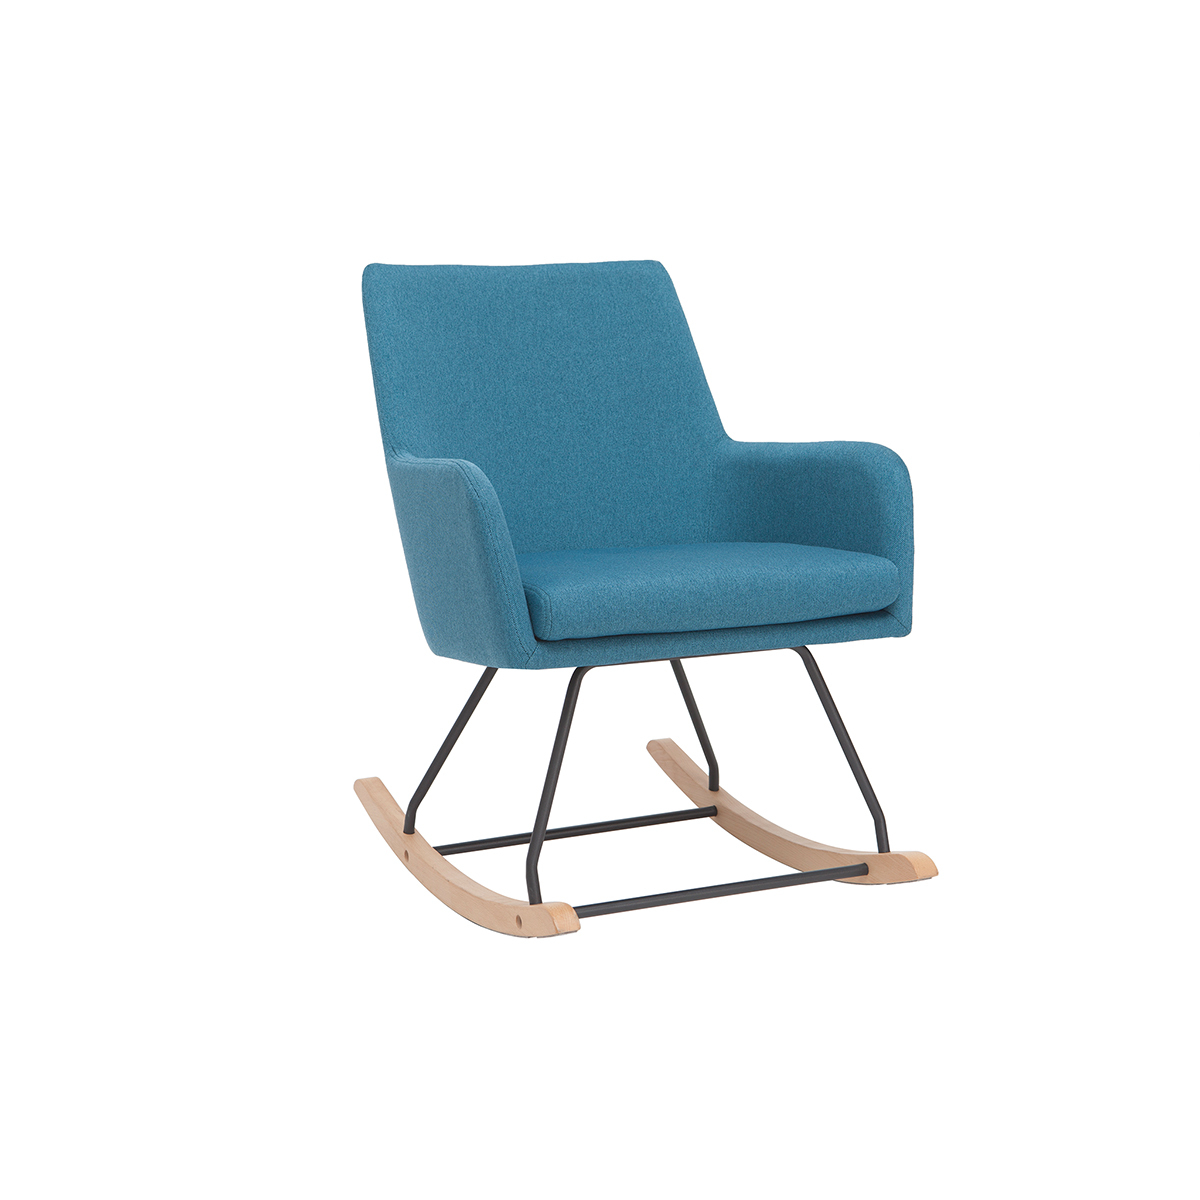 Rocking chair design en tissu bleu canard SHANA vue1